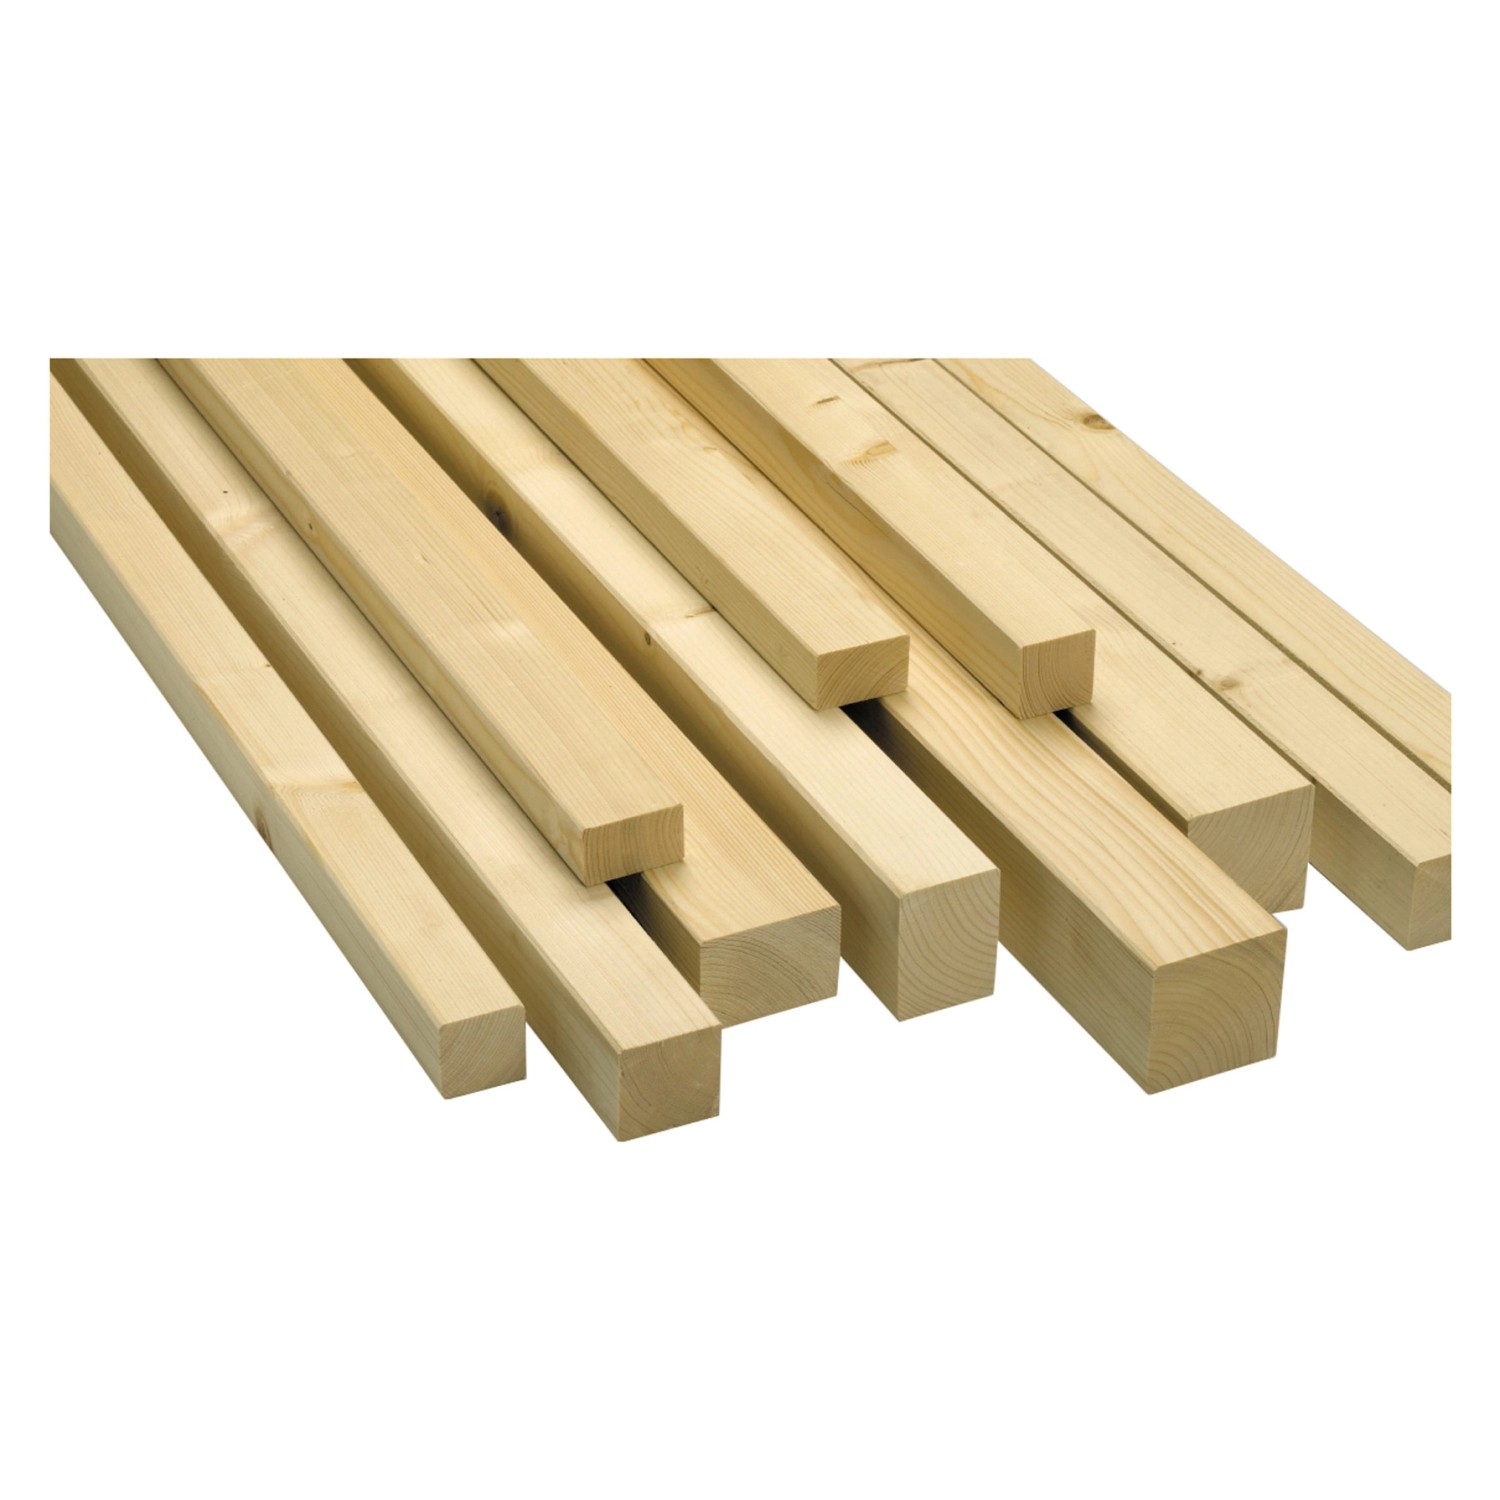 Rahmenholz aus Fichte/Tanne gehobelt 54 mm x 54 mm x 2.000 mm